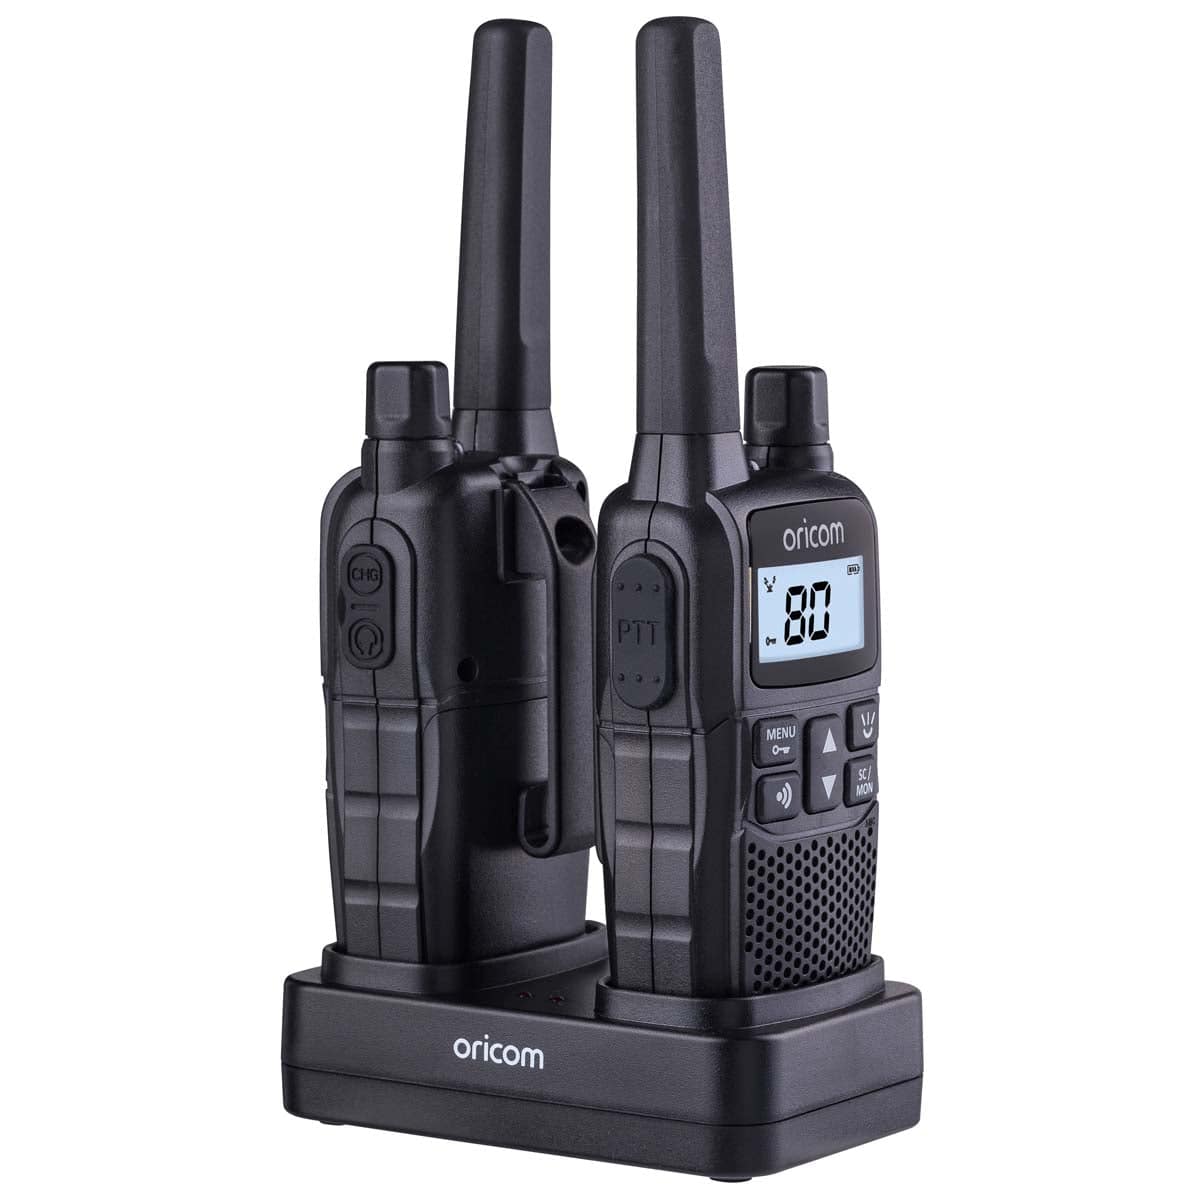 UHF2390 2 Watt Handheld UHF CB Radio Twin Pack